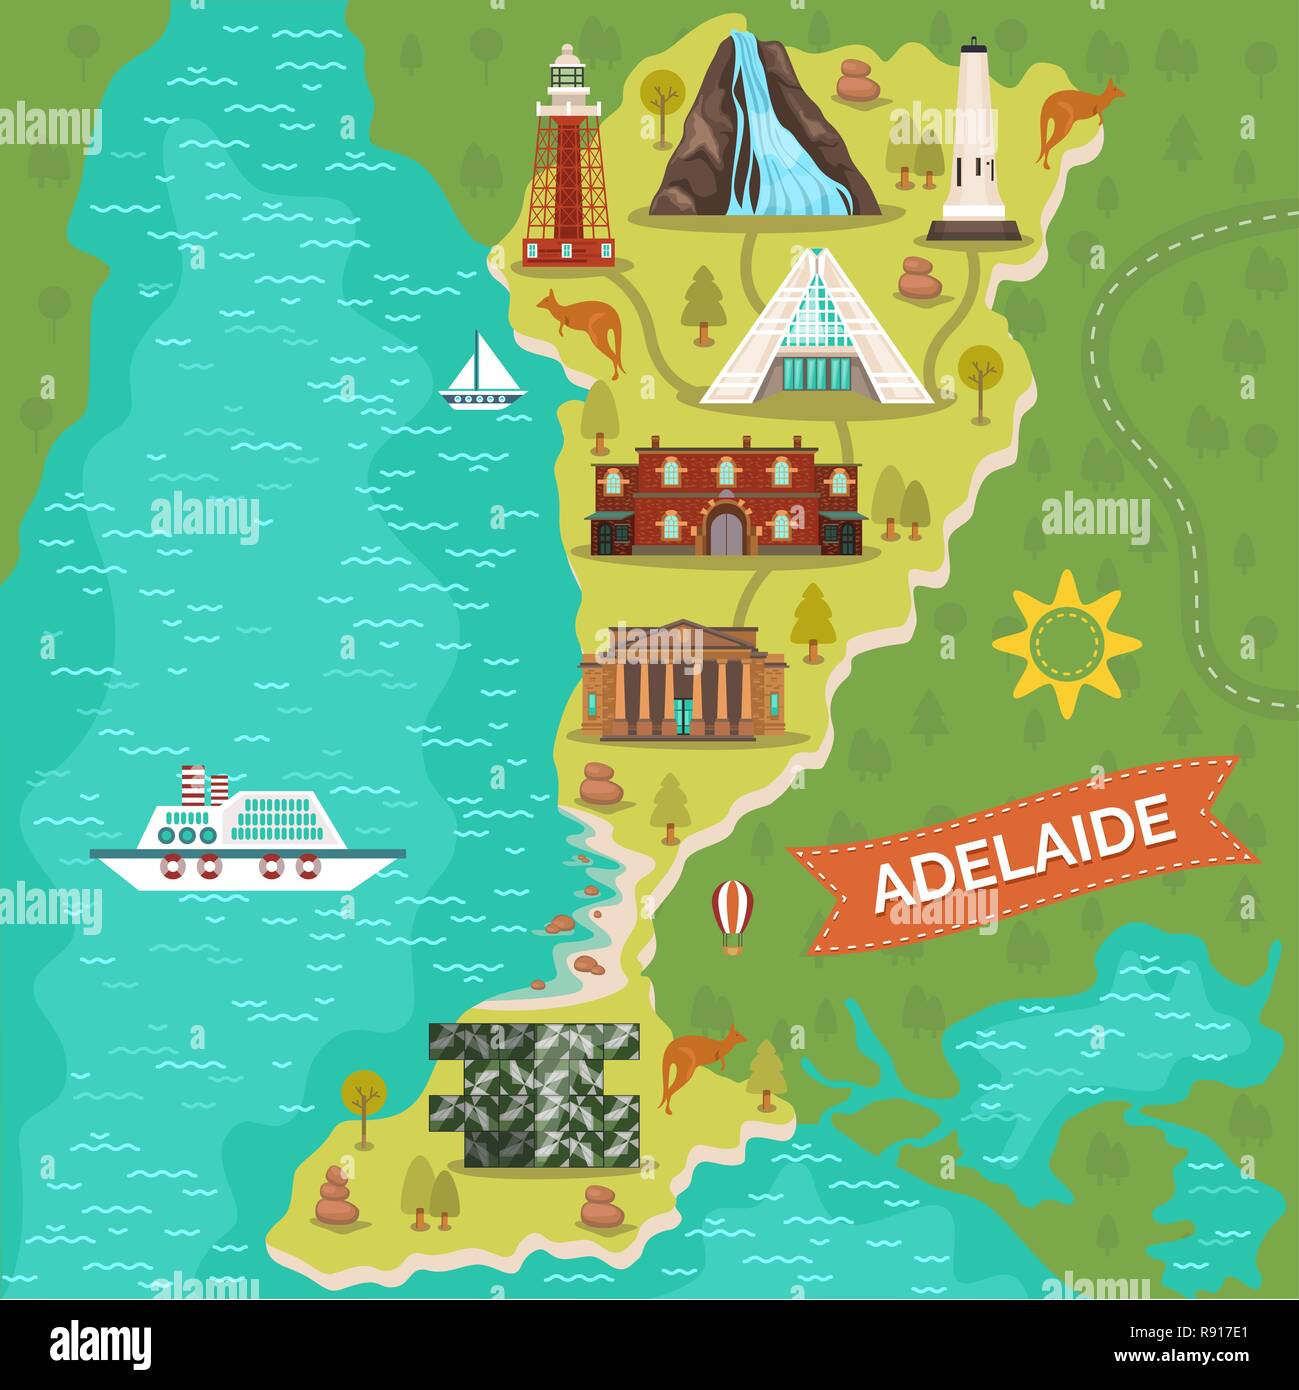 Adelaide Sehenswürdigkeiten auf Reisen Karte. Australische Stadt Stock Vektor